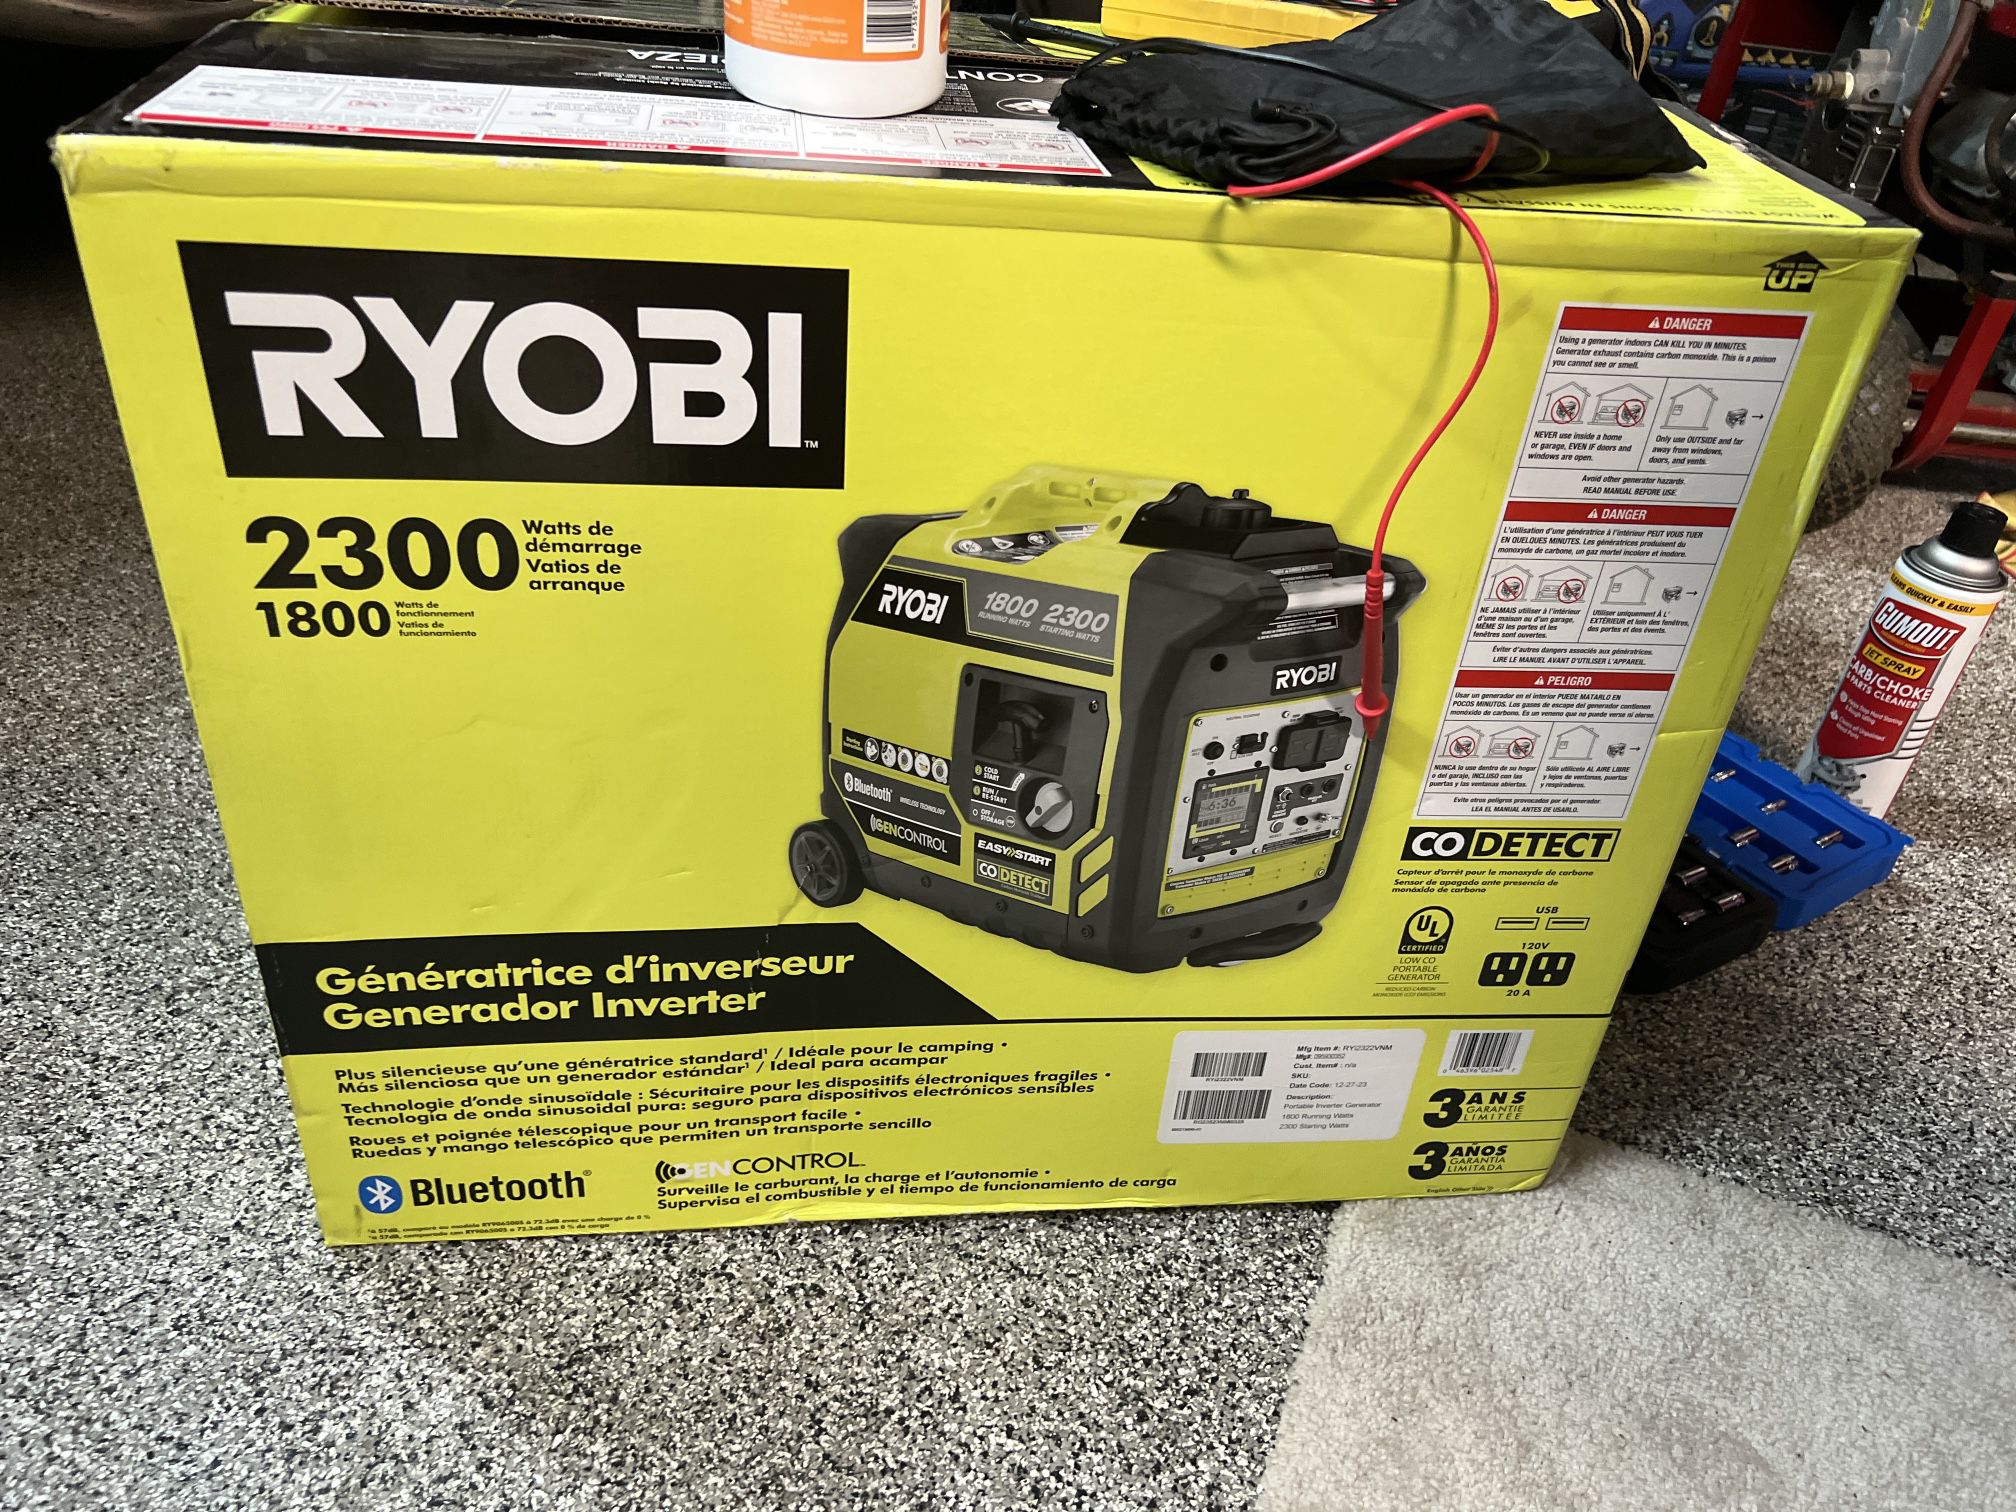 Ryobi generator inverter 2300 Starting 1800 Running Watts